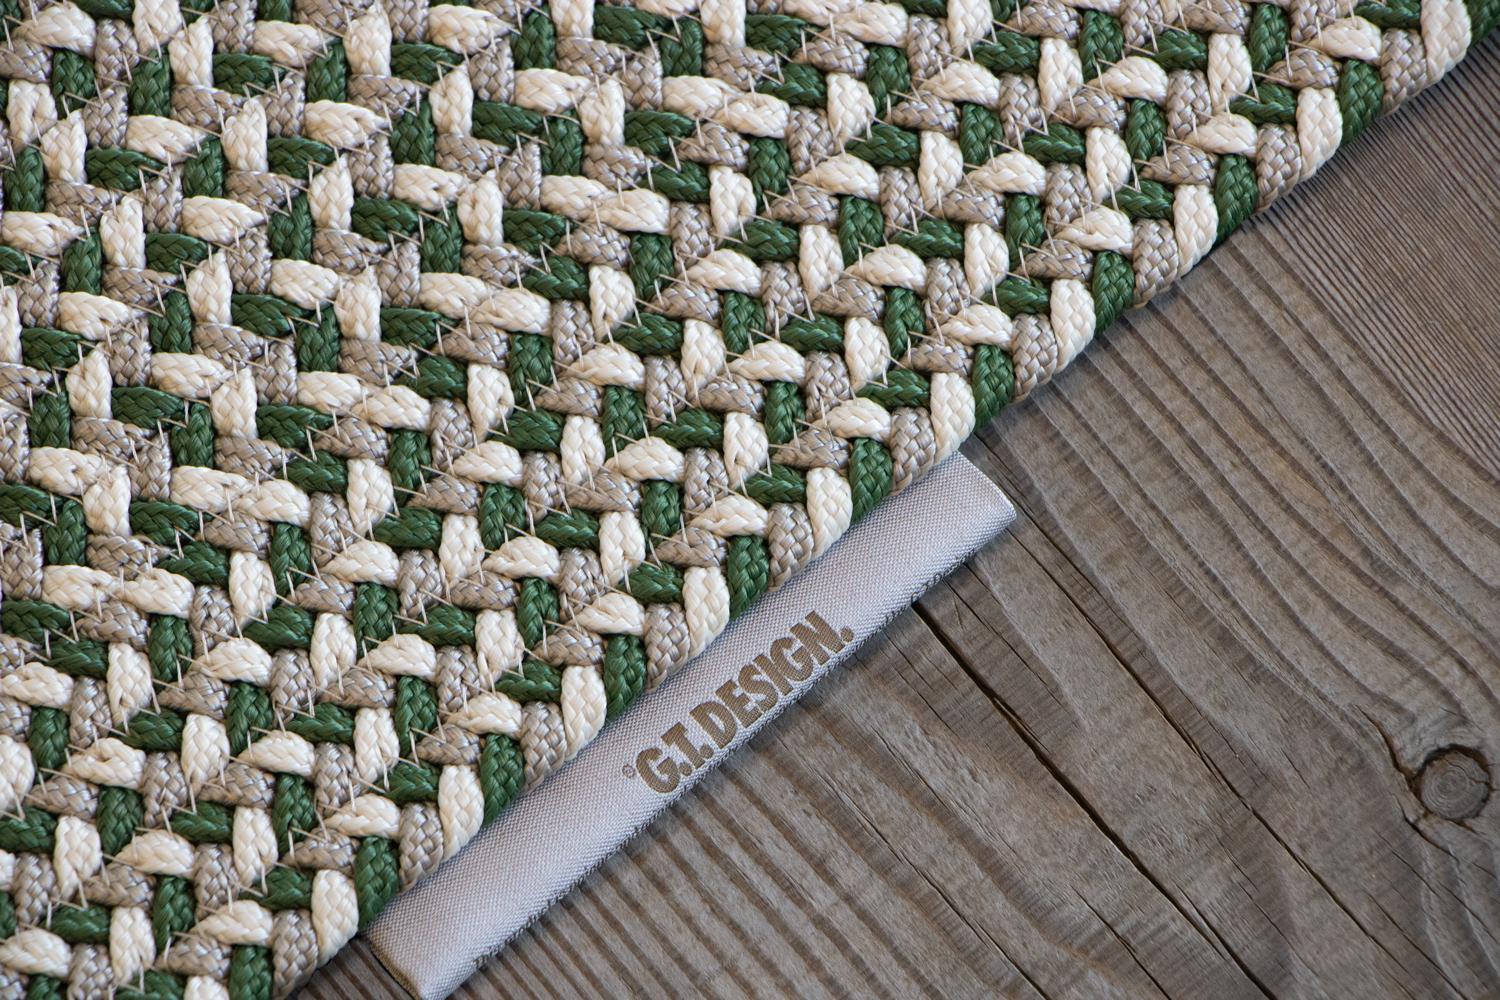 Other Tappeto foglia outdoor verde grigio design italiano Deanna Comellini 176x300cm For Sale